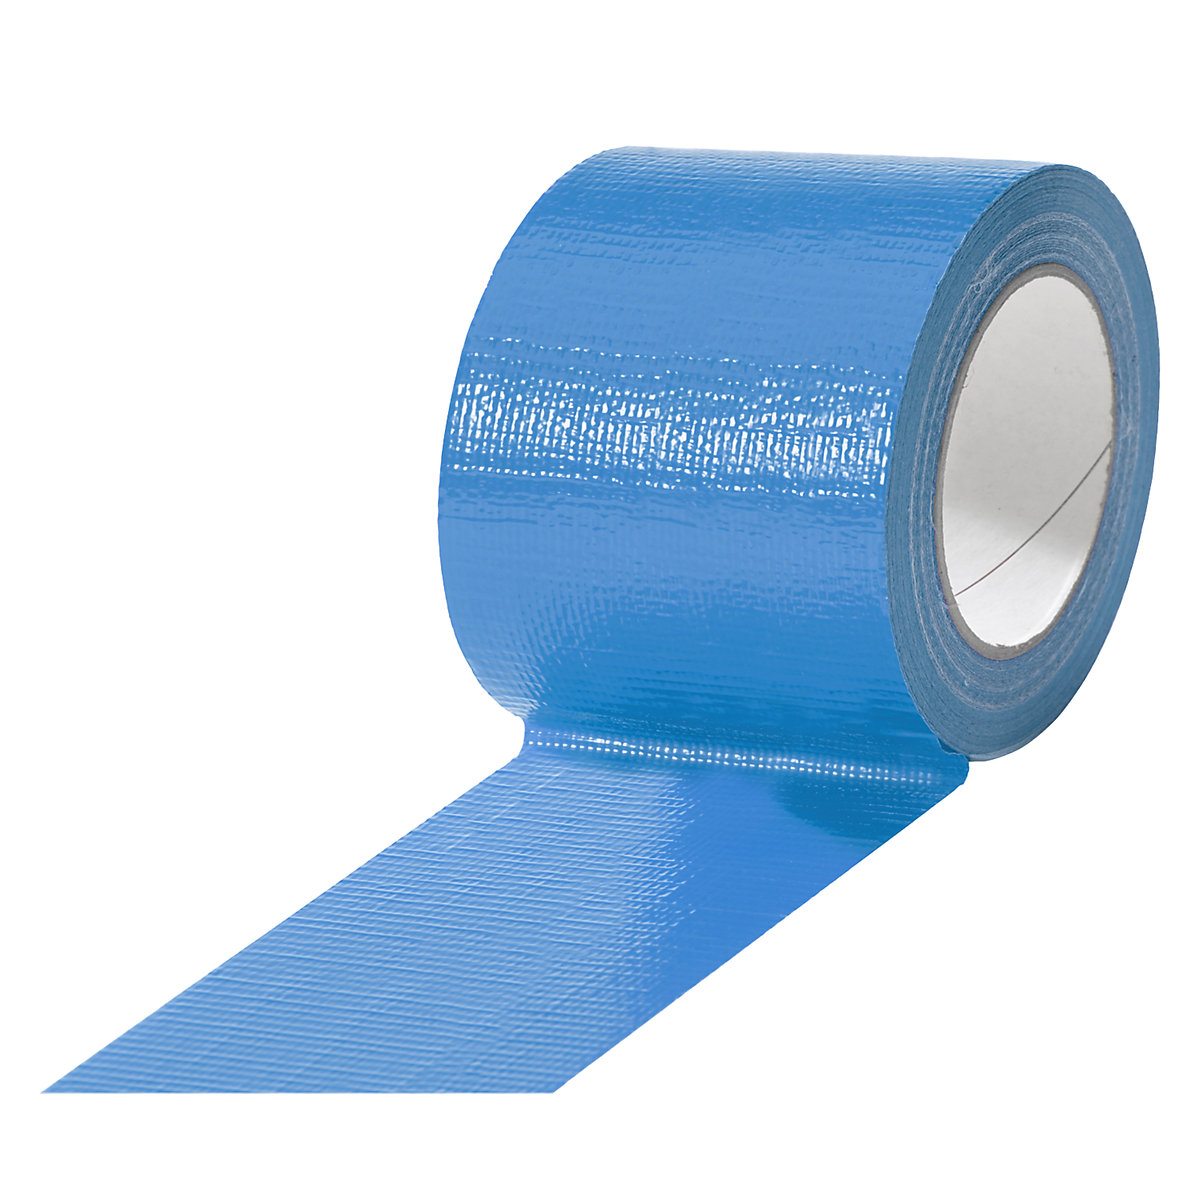 Cinta de tejido, en diferentes colores, UE 12 rollos, azul, anchura de cinta 75 mm-15